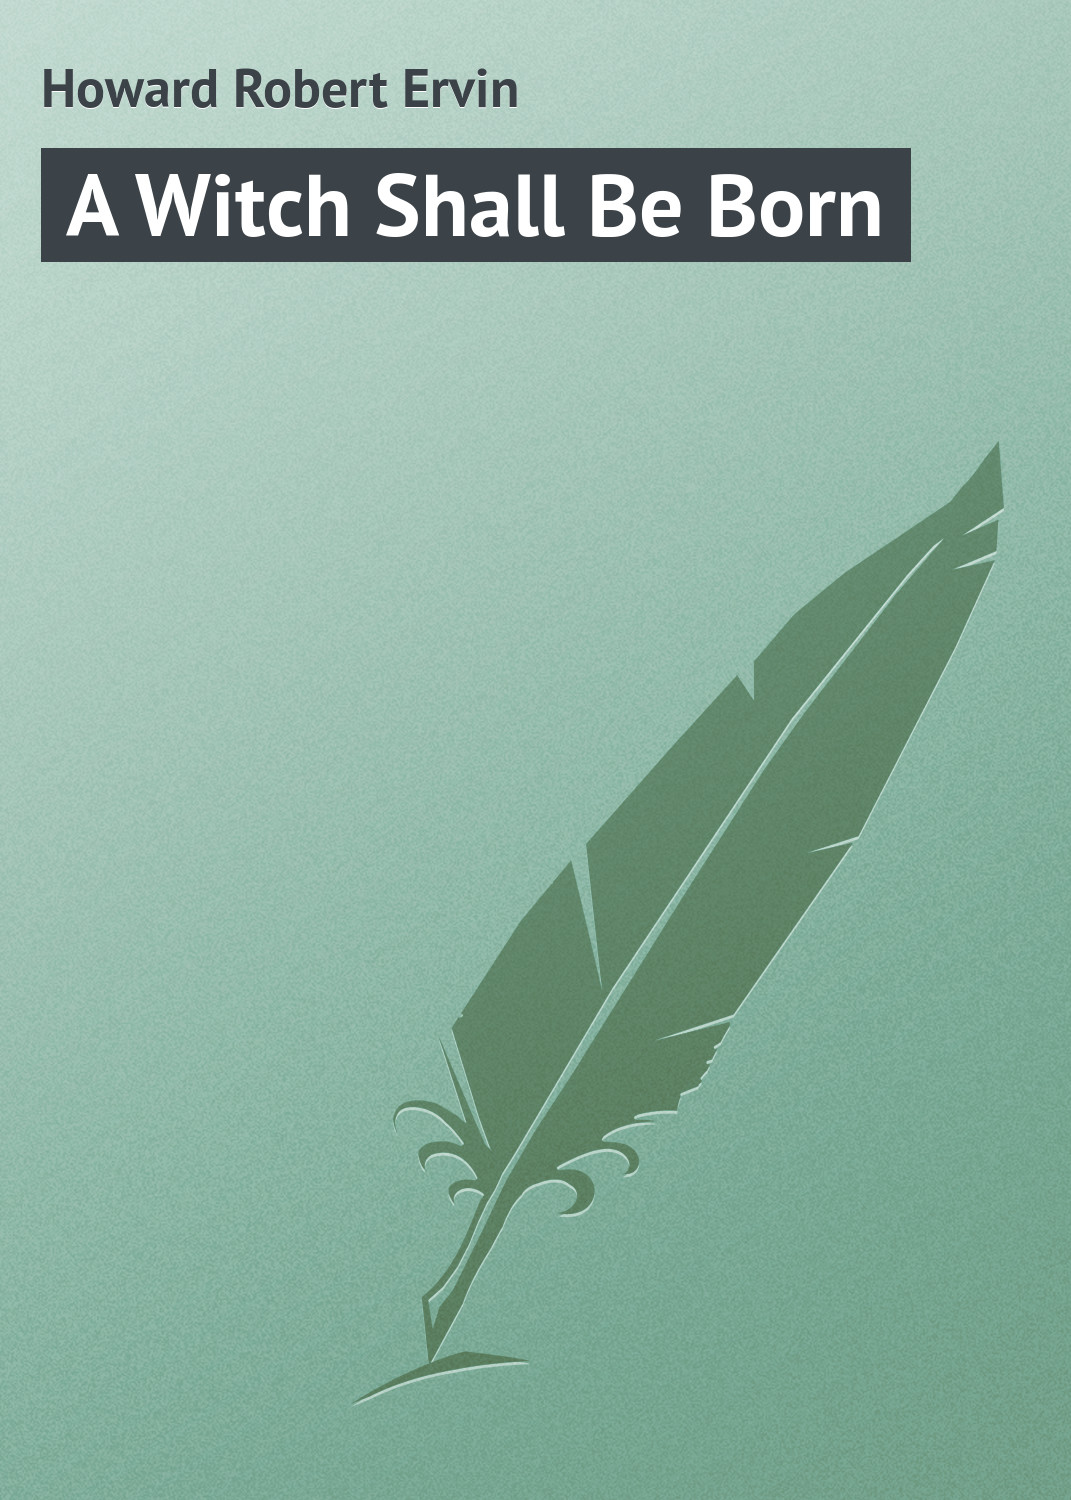 Книга A Witch Shall Be Born из серии , созданная Robert Howard, может относится к жанру Зарубежная классика. Стоимость электронной книги A Witch Shall Be Born с идентификатором 23147627 составляет 5.99 руб.